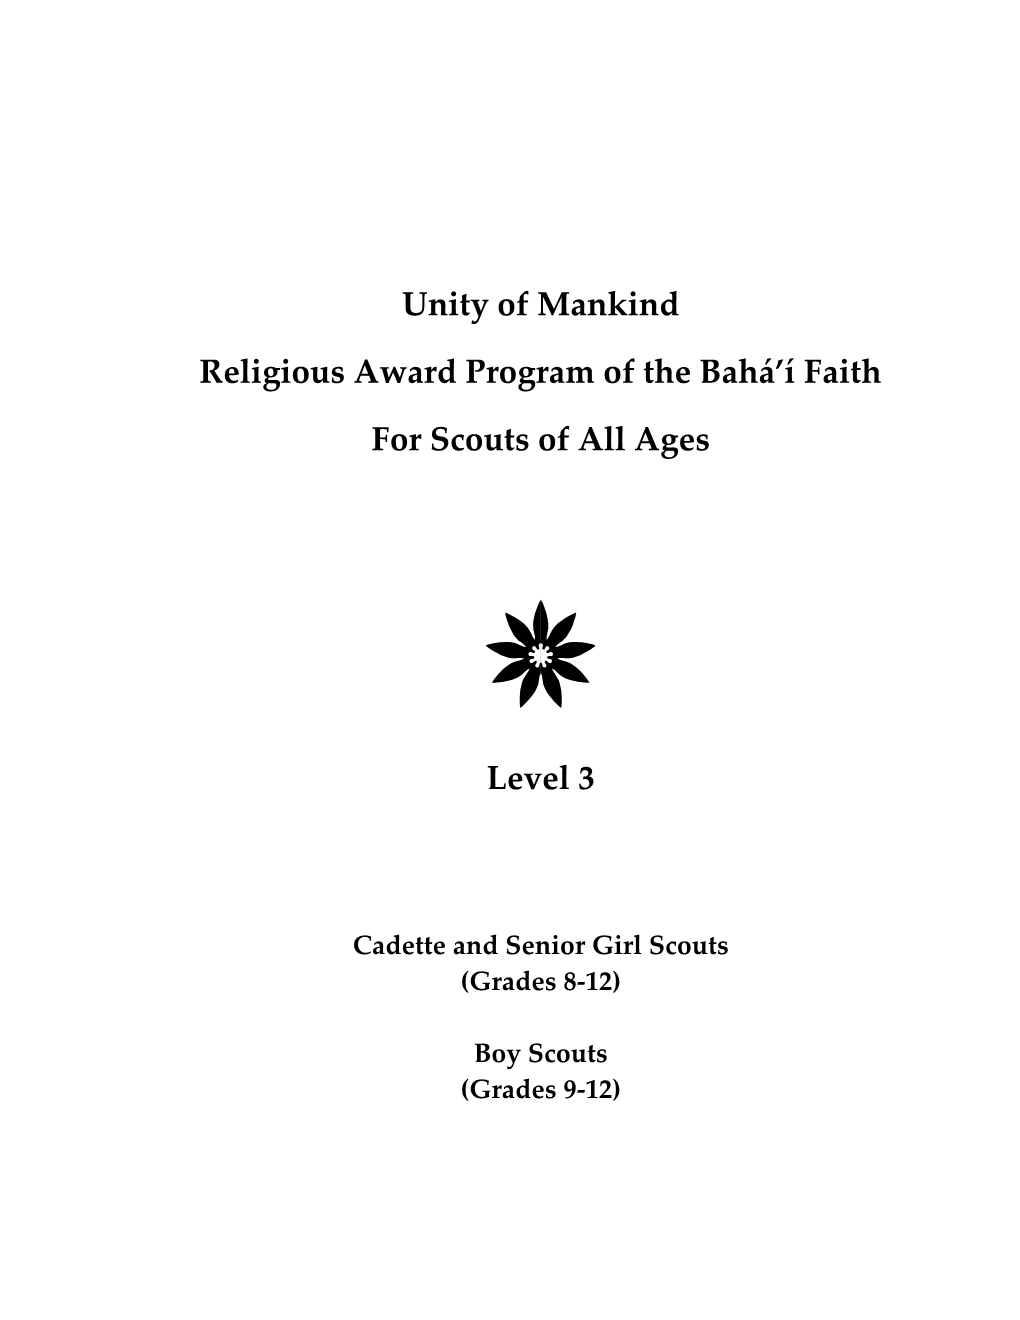 Unity of Mankind Religious Award Program of the Baha'i Faith